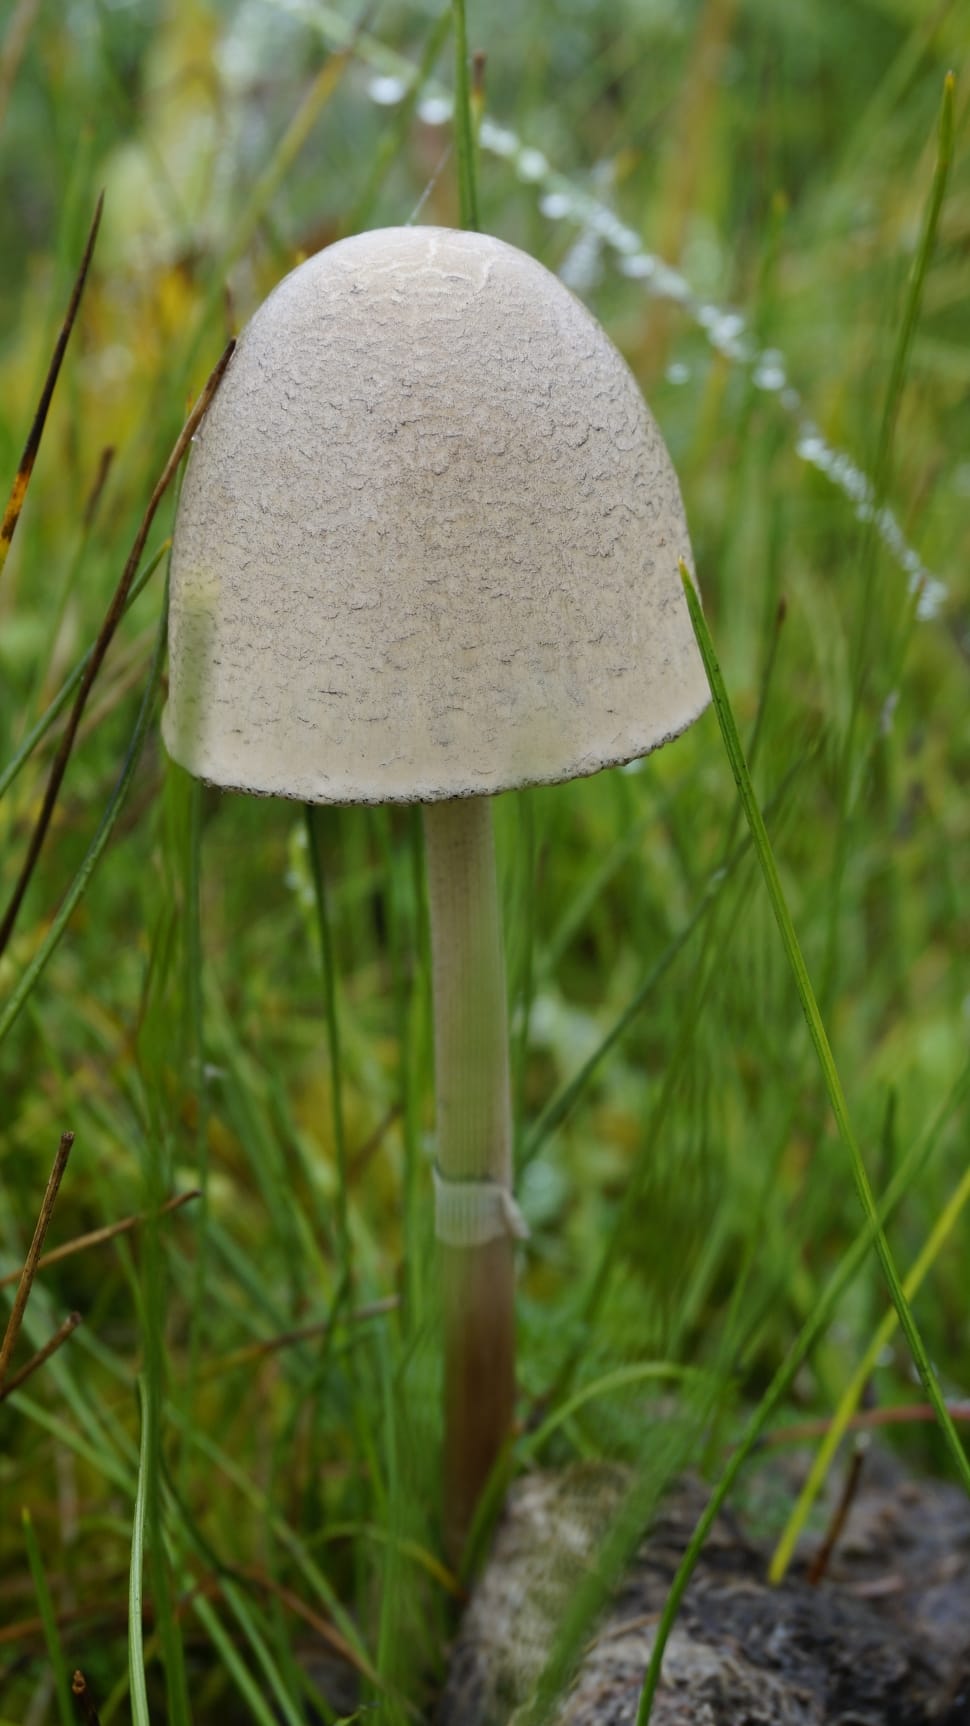 Mushroom, Umbrella, Grassland, growth, mushroom preview